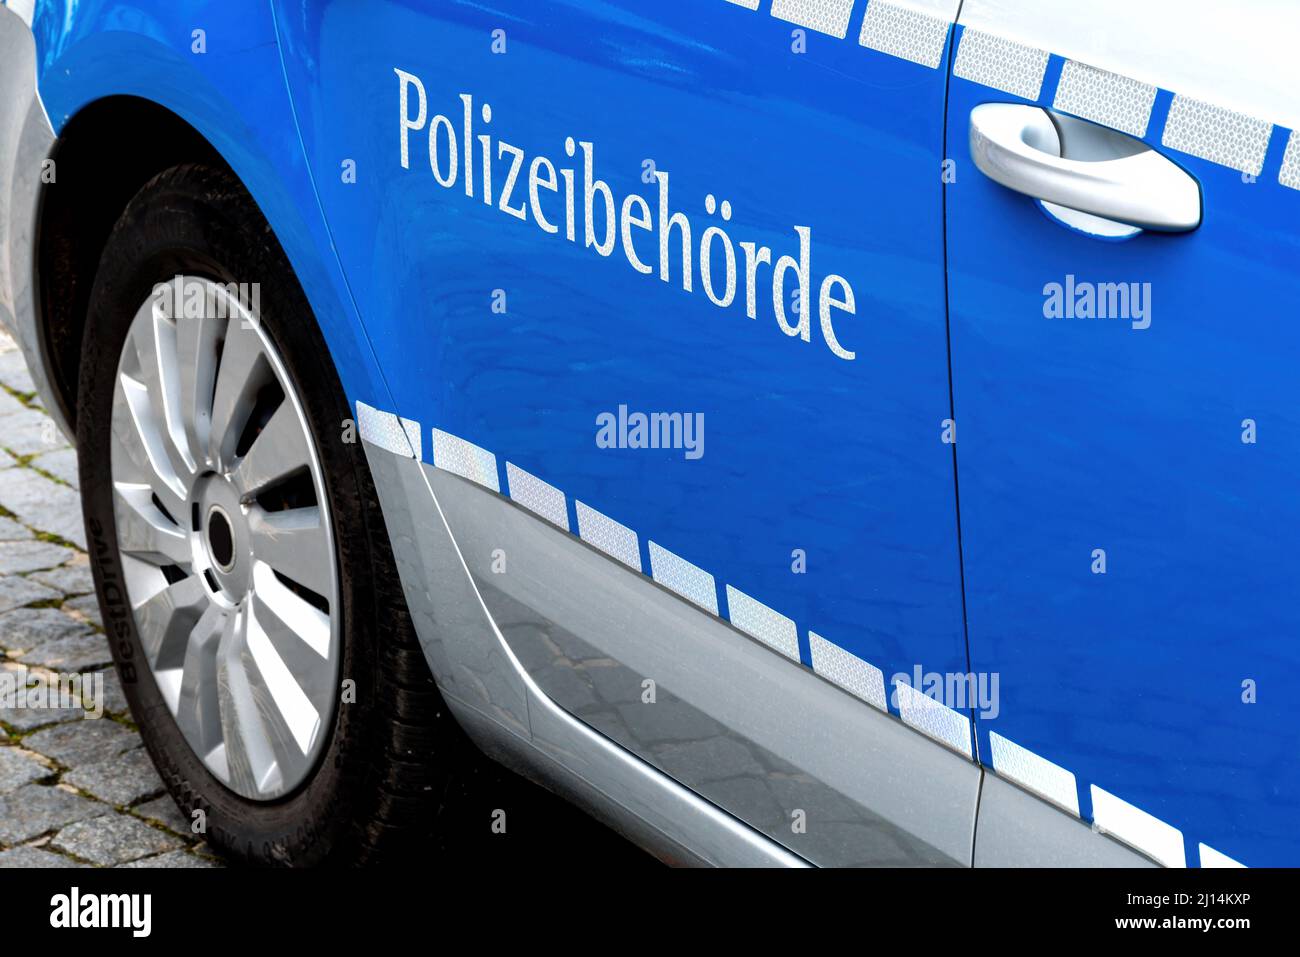 Palabra alemana Polizeibehörde (autoridad policial) en un coche de policía Foto de stock